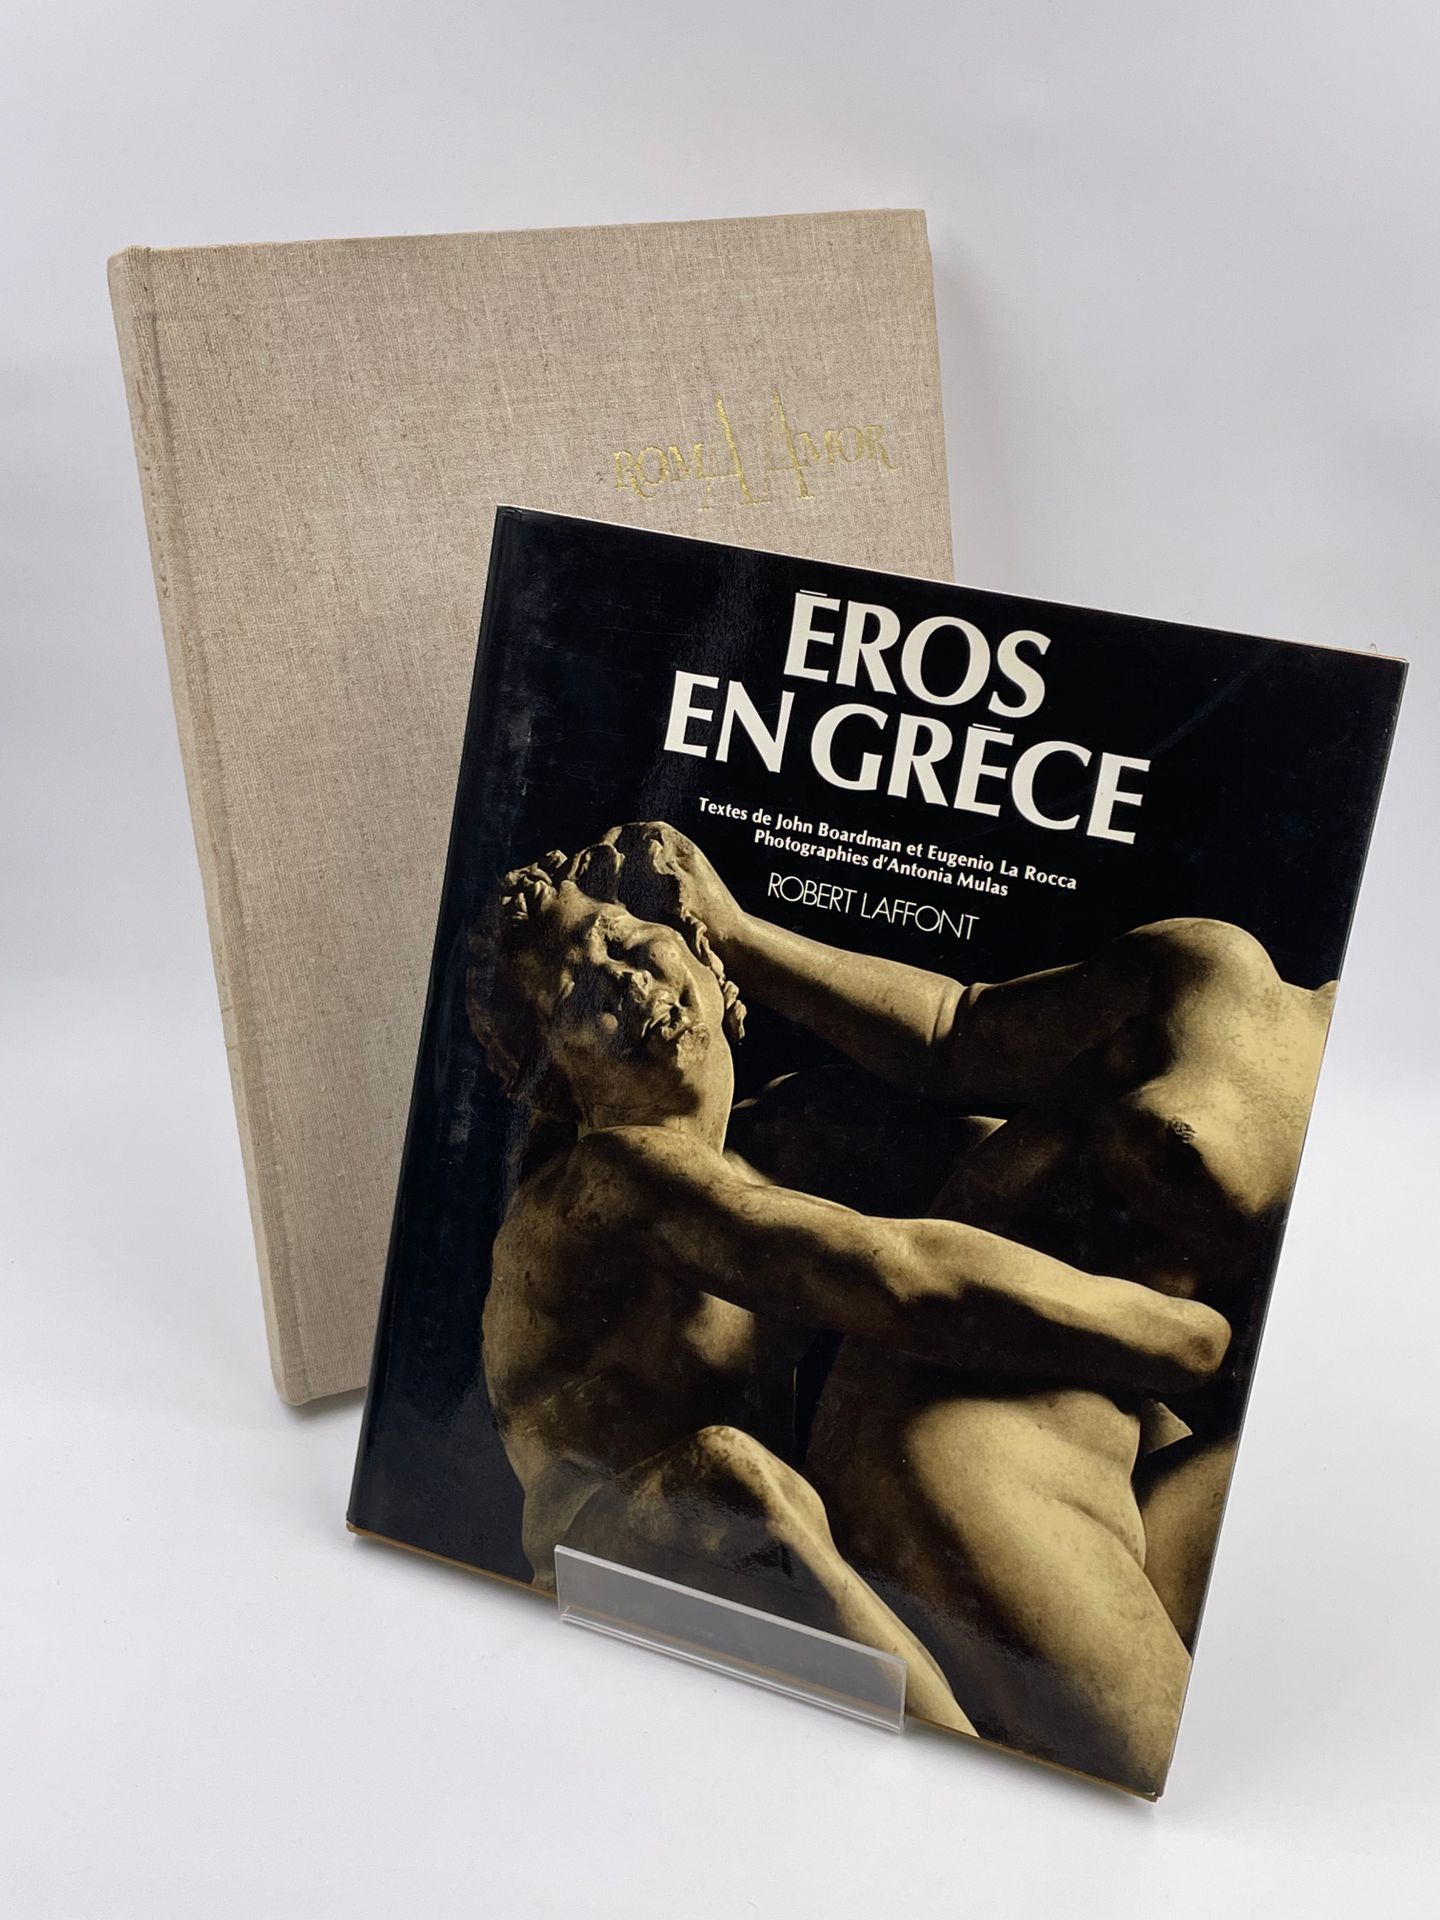 Null 2卷。

- EROS IN GREECE", J. Boardman, Eugenio La Rocca, Phot.Antonia Mulas, &hellip;